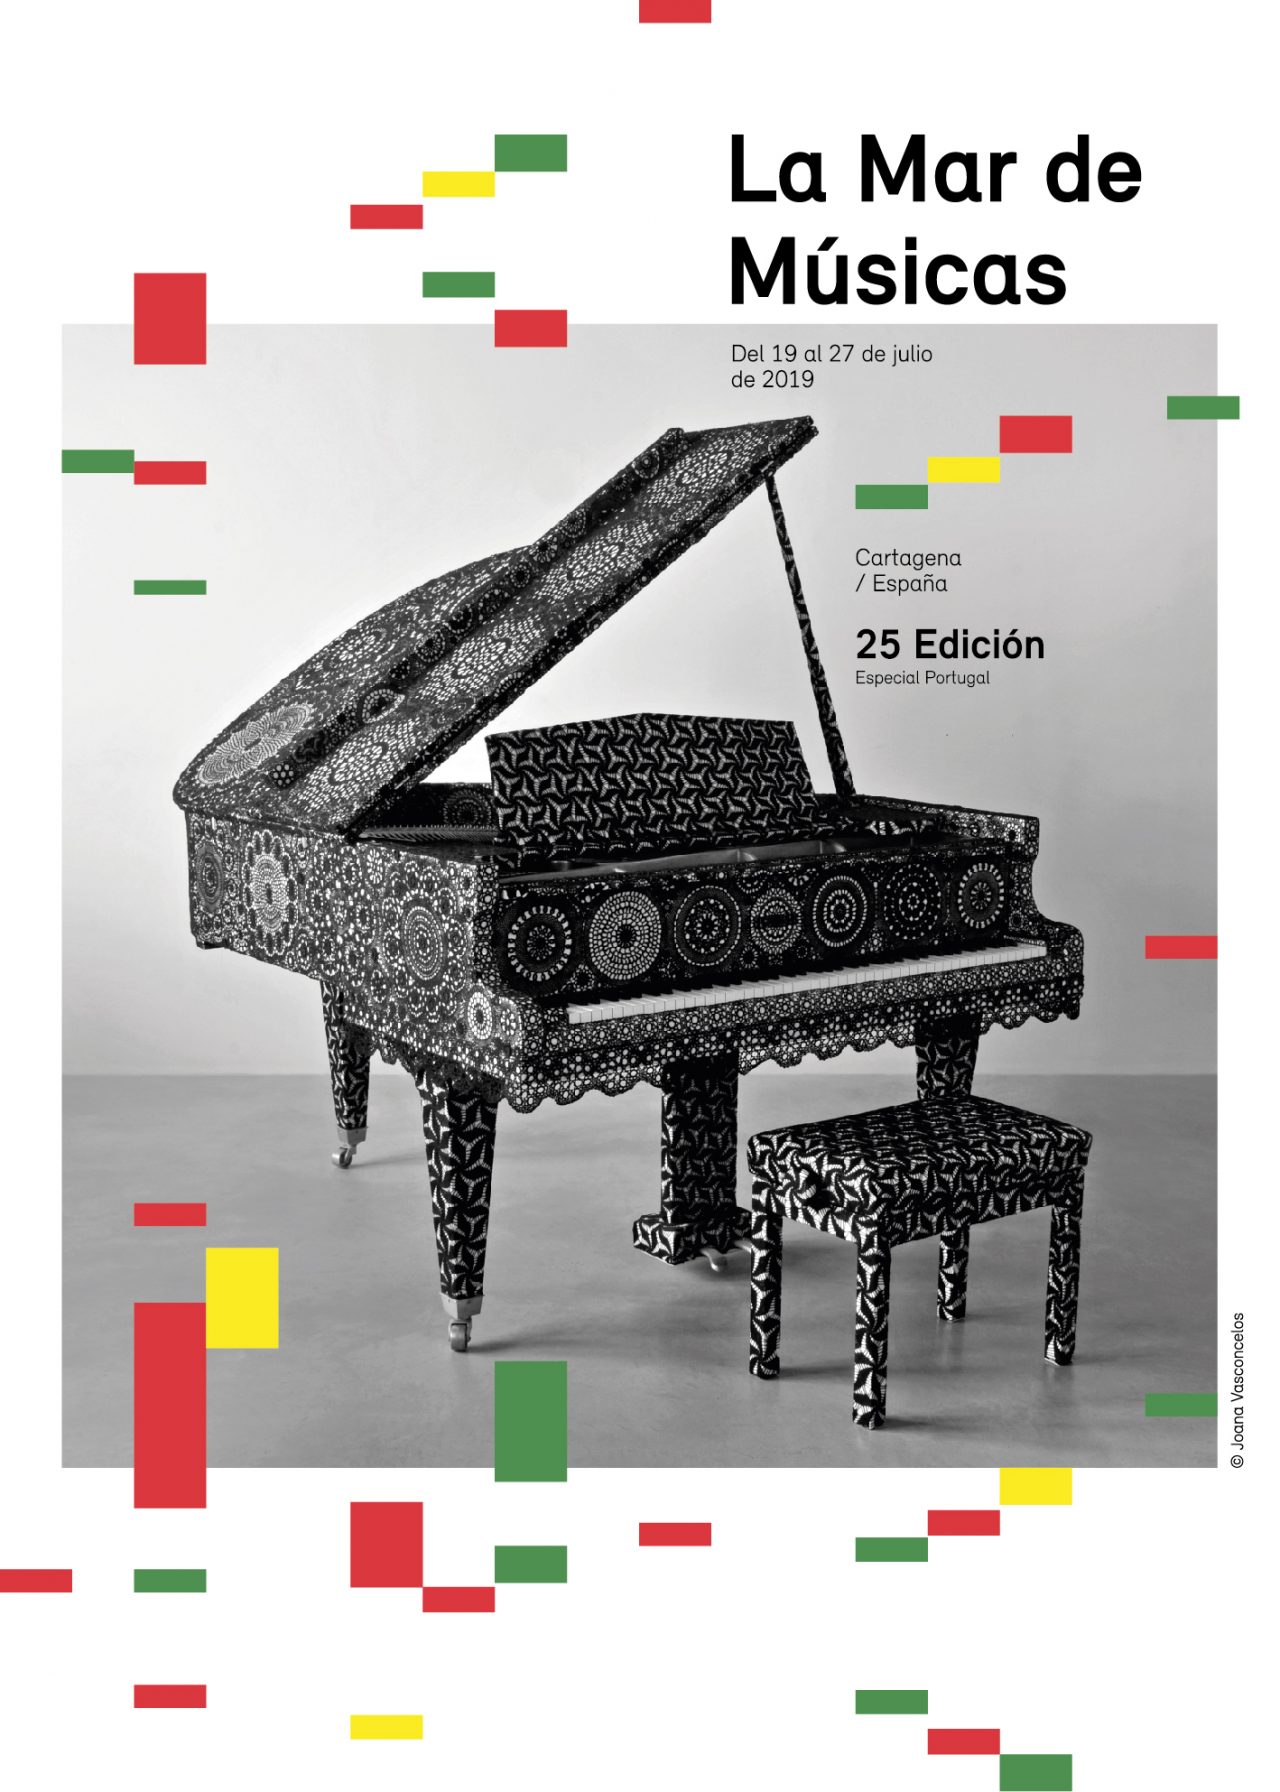 La Mar de Músicas 2019 escolhe Portugal como protagonista